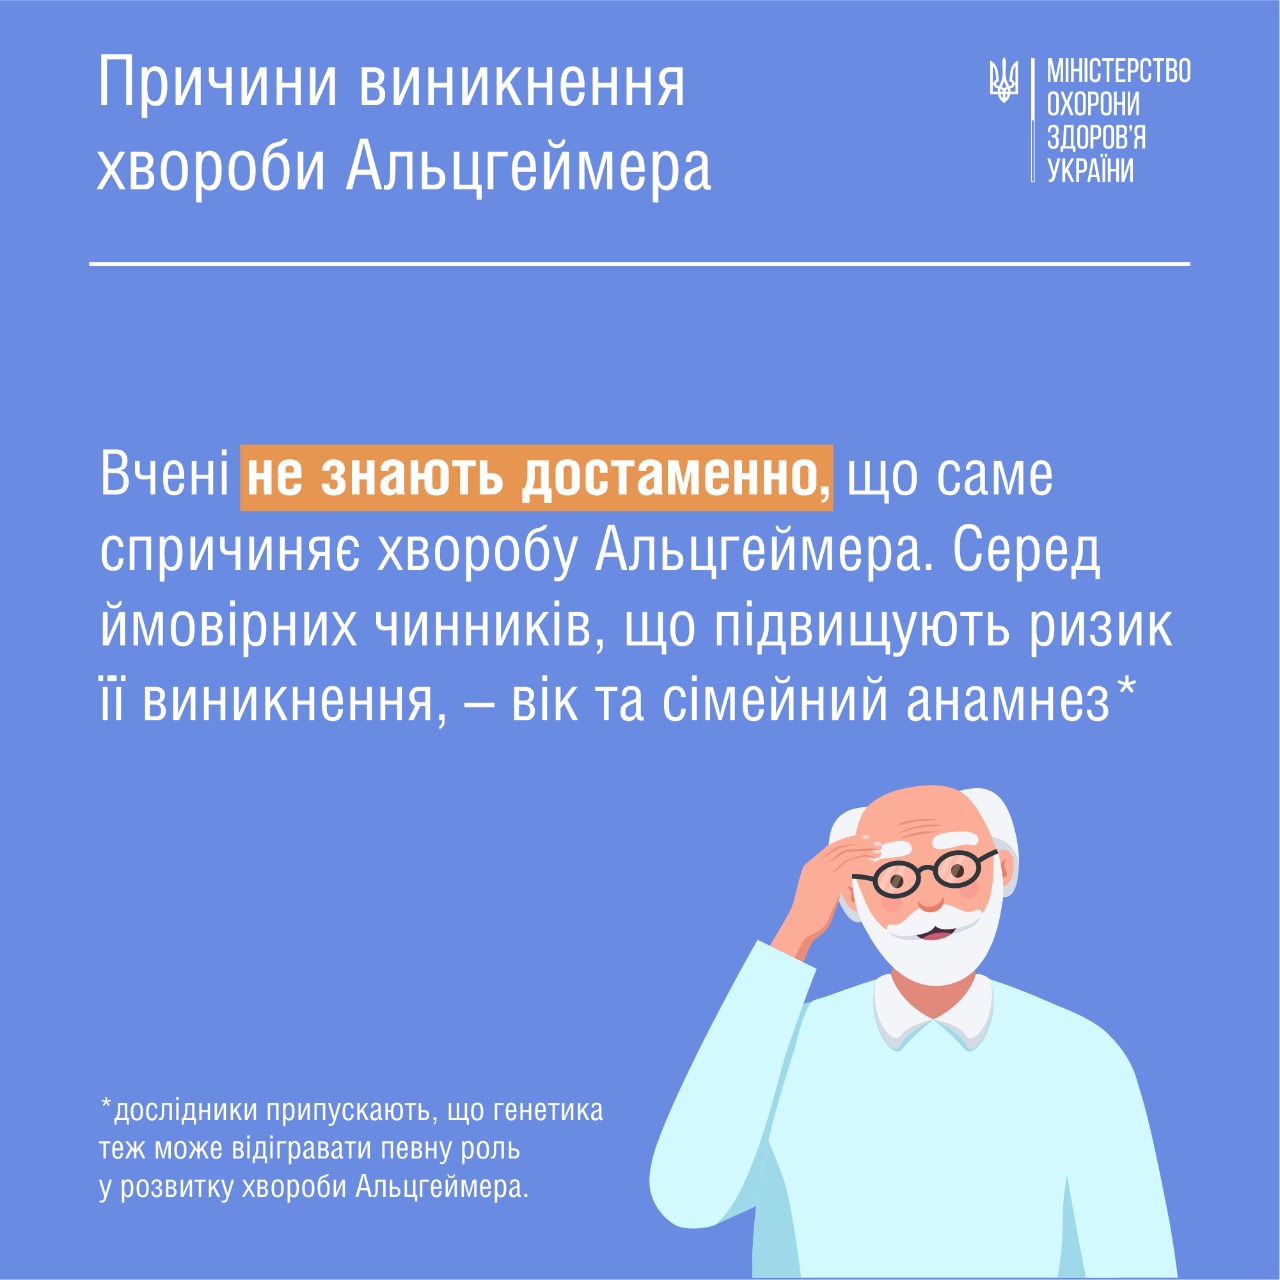 Министерство здравоохранения Украины сообщает о том, что более 50 миллионов человек в мире имеют деменцию